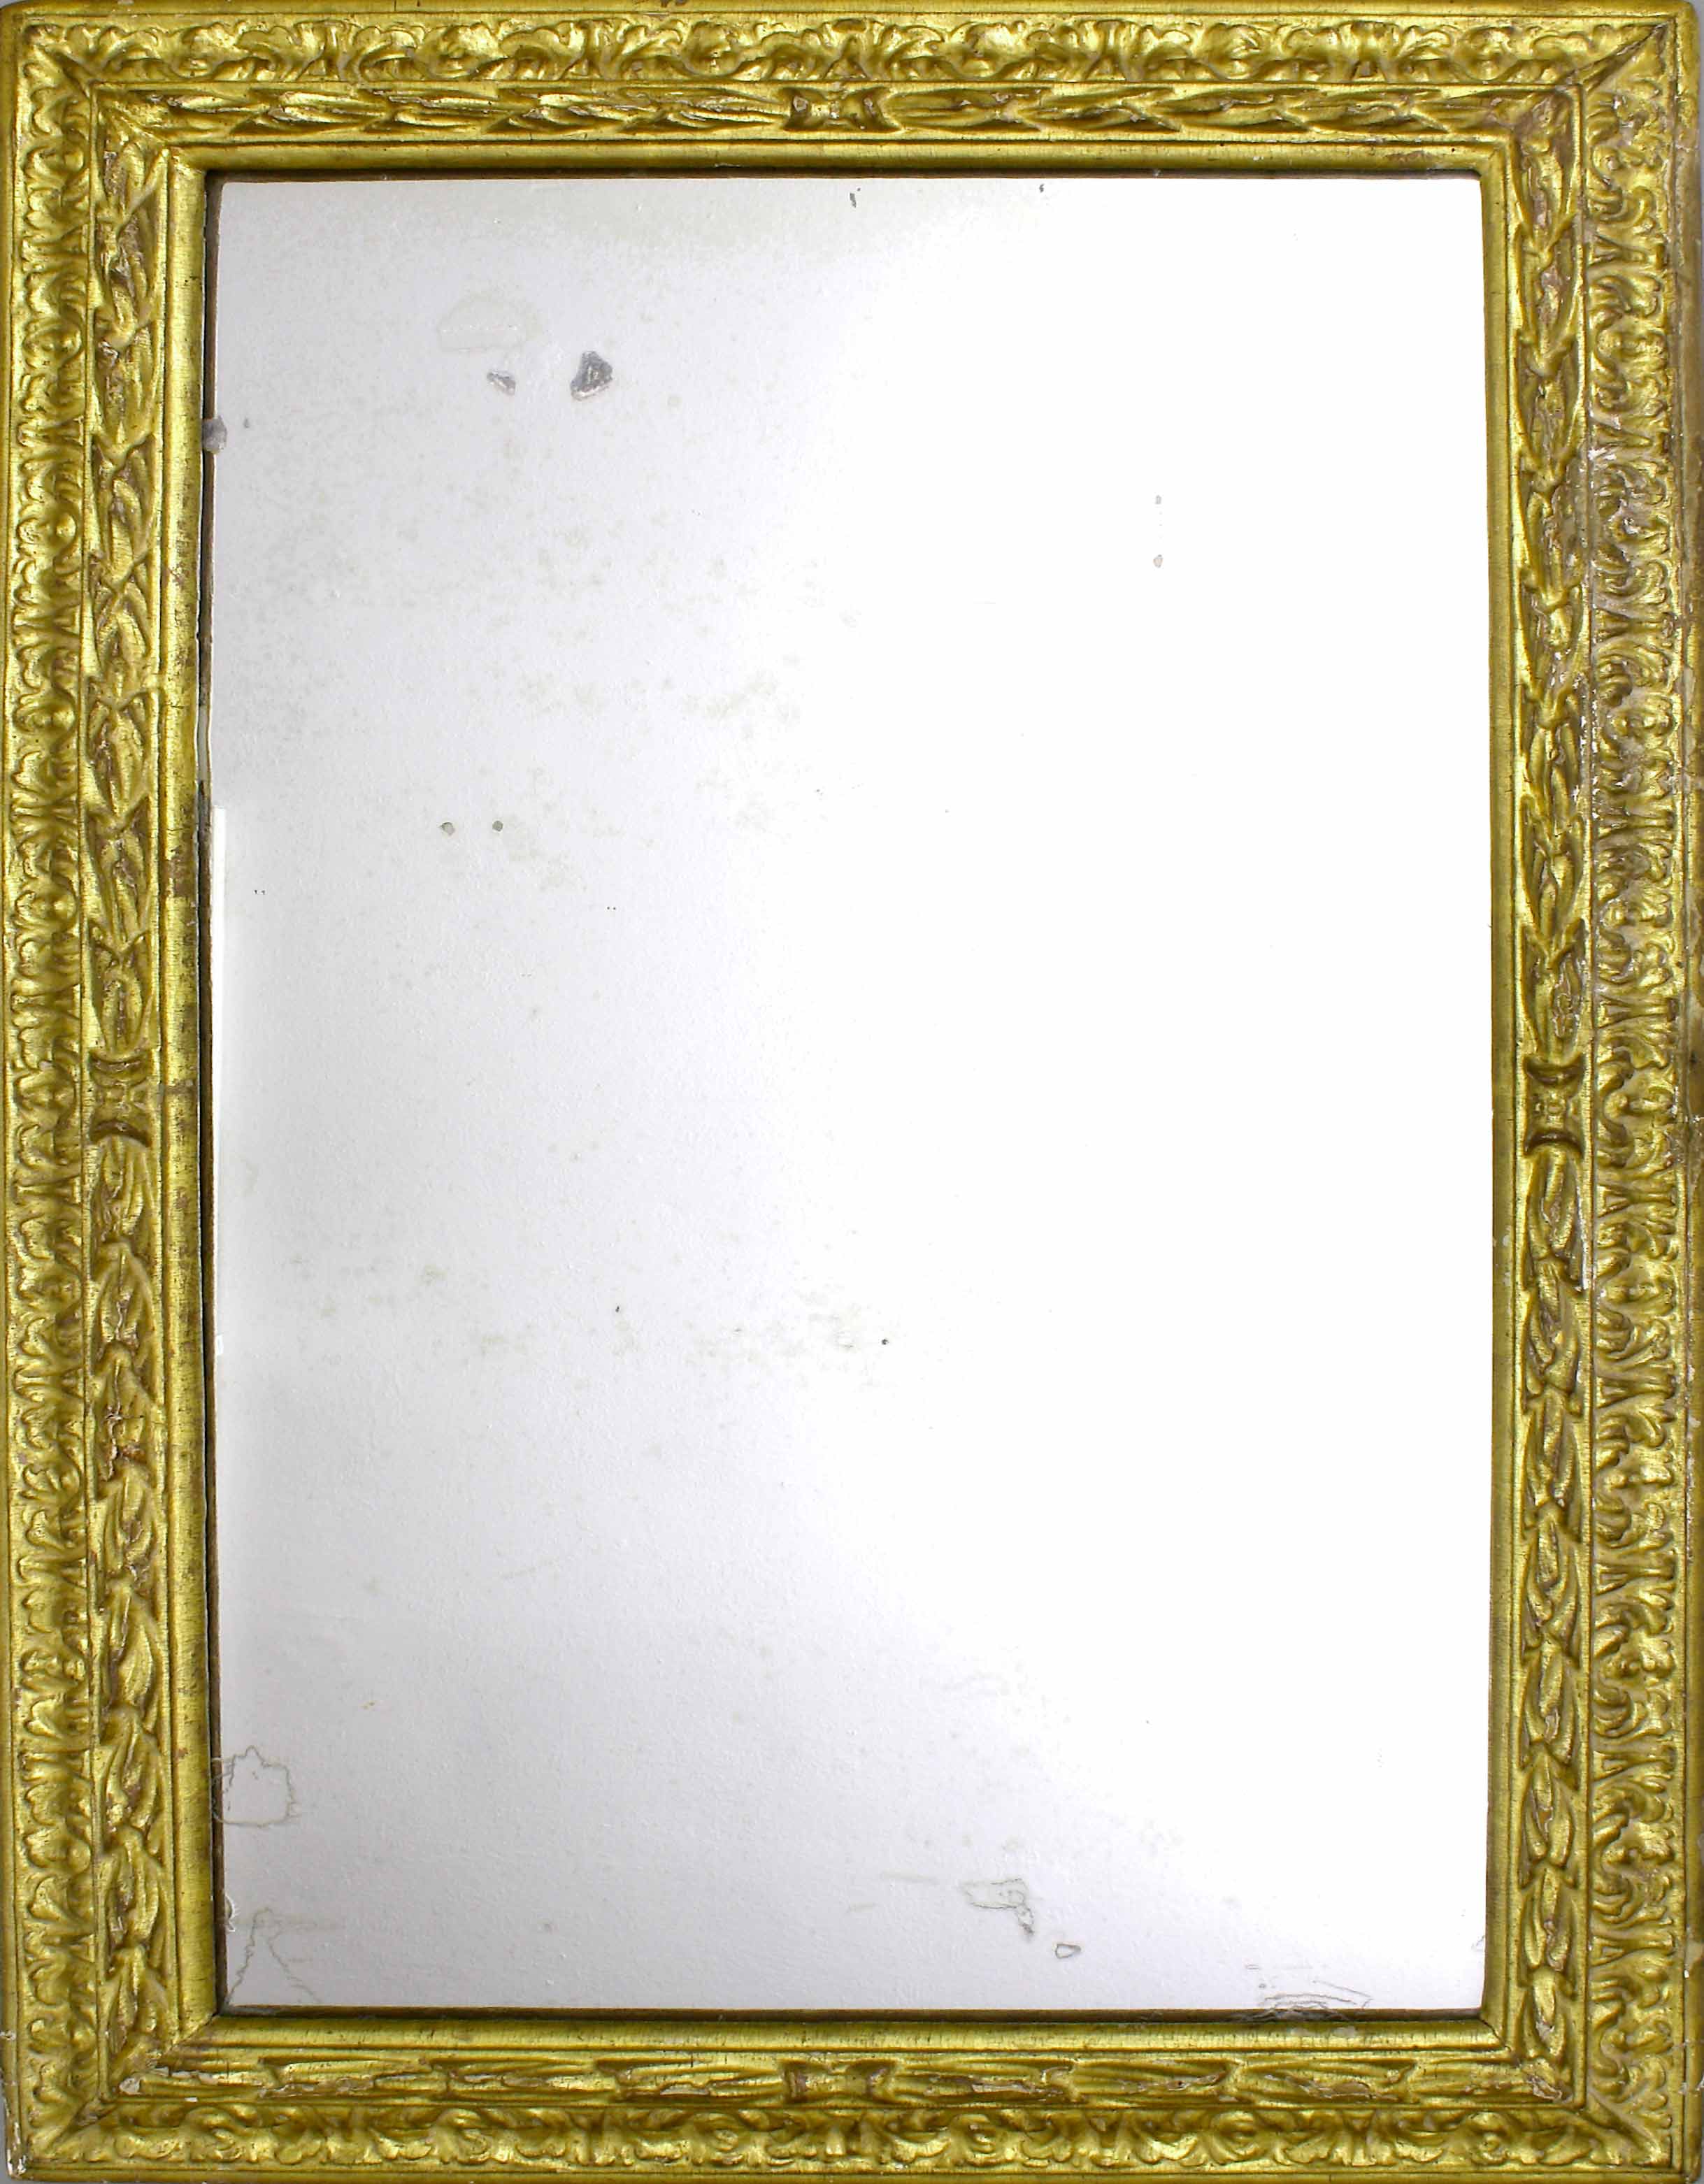 Auktionshaus Quentin Berlin GemÃ¤lderahmen mit Spiegel  Italien  17. Jh. Geschnitzt und vergoldet. Original GrÃ¶Ãe. 85 x 53 5 cm. Lichtes MaÃ 72 5 x 42 5 cm.